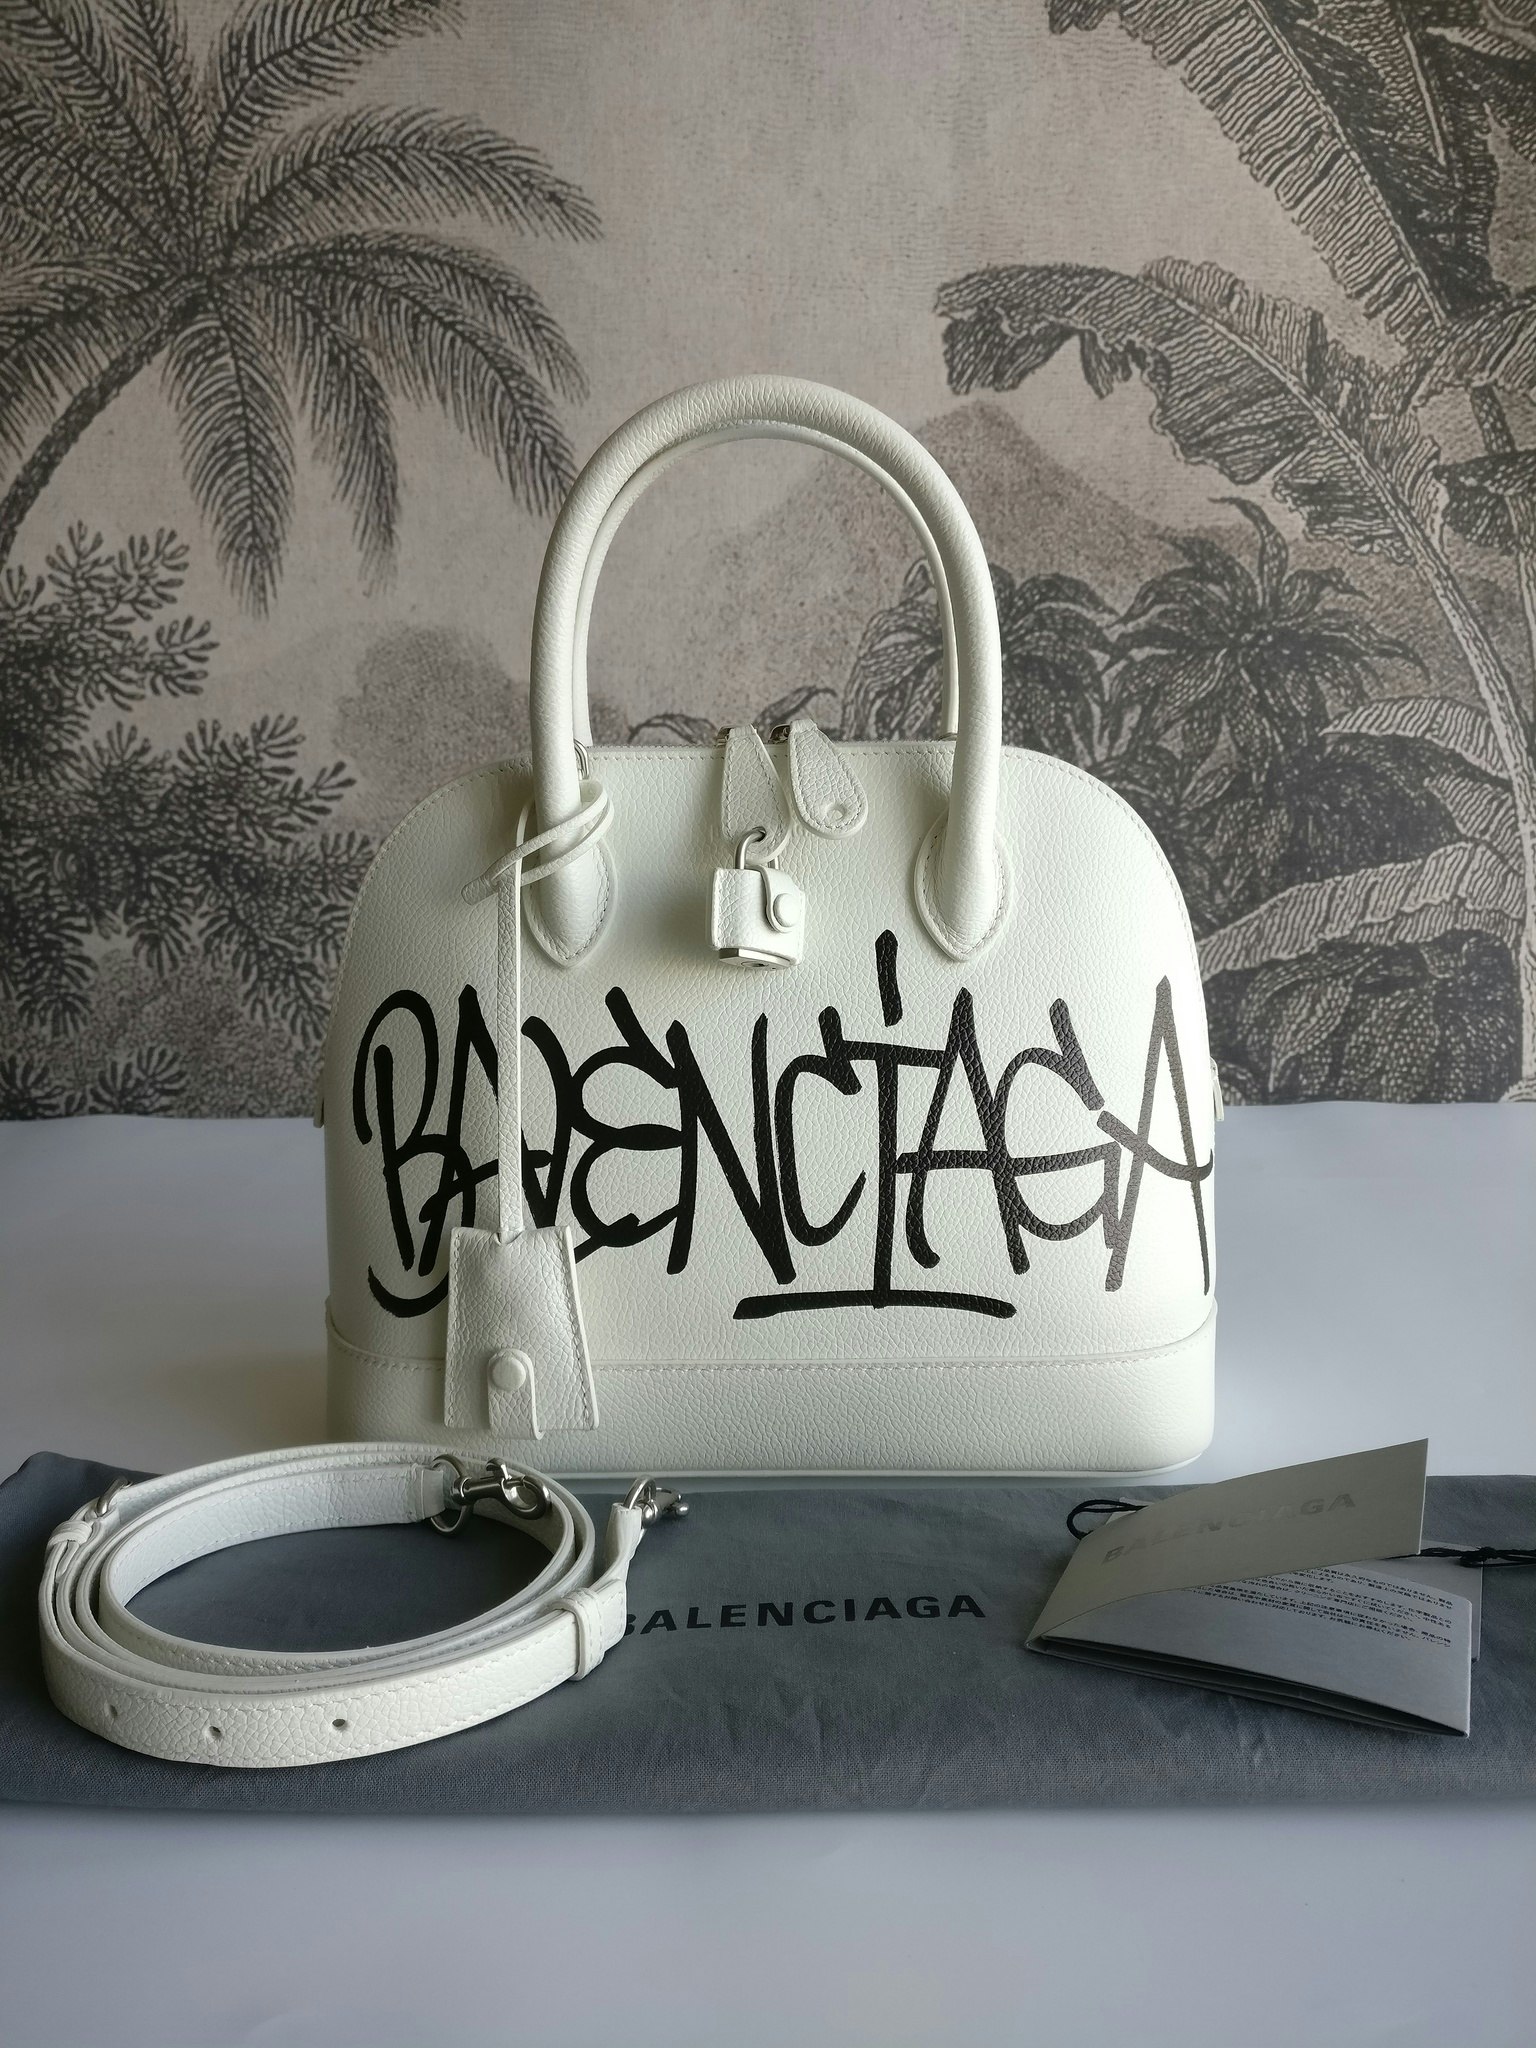 Balenciaga Small Ville Top Handle Bag in White & Black